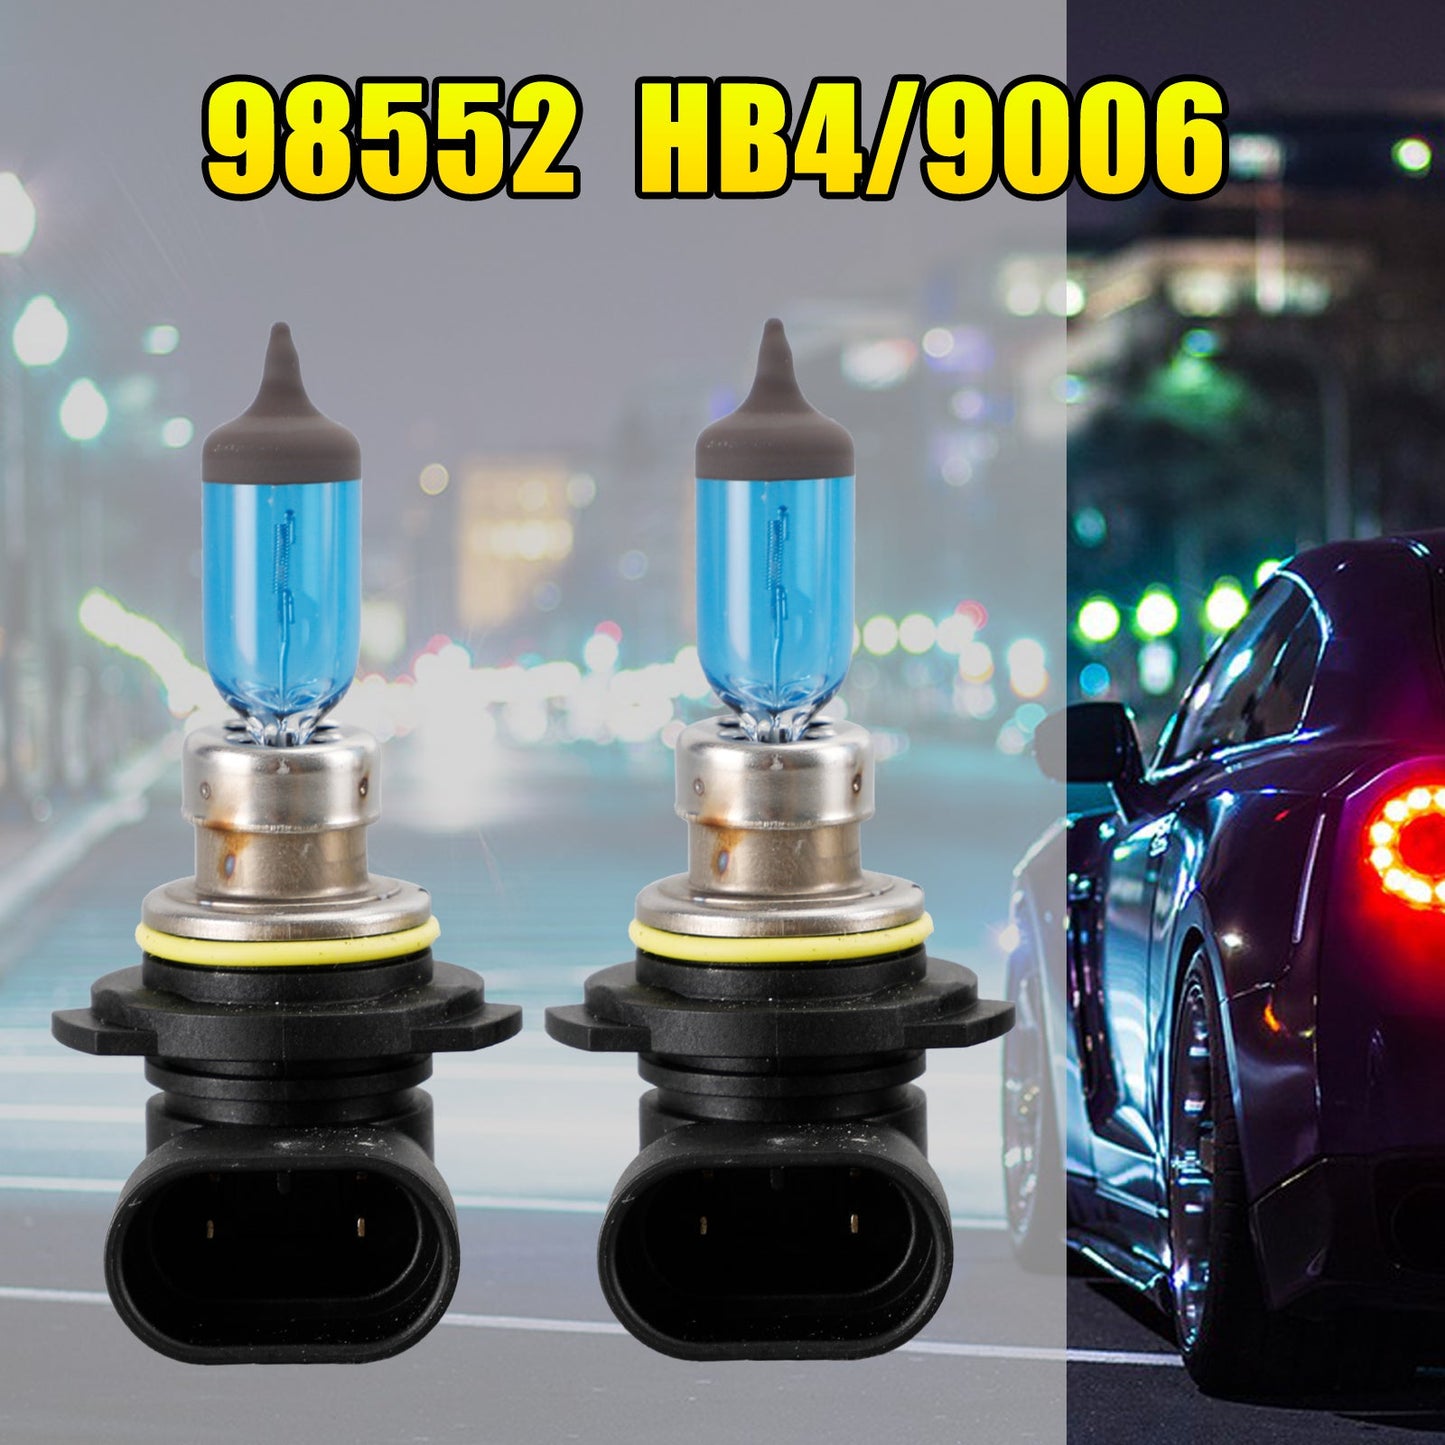 HB4 RPW 98552 For NARVA Range Power White Car Headlight Lamp 12V60W P22d